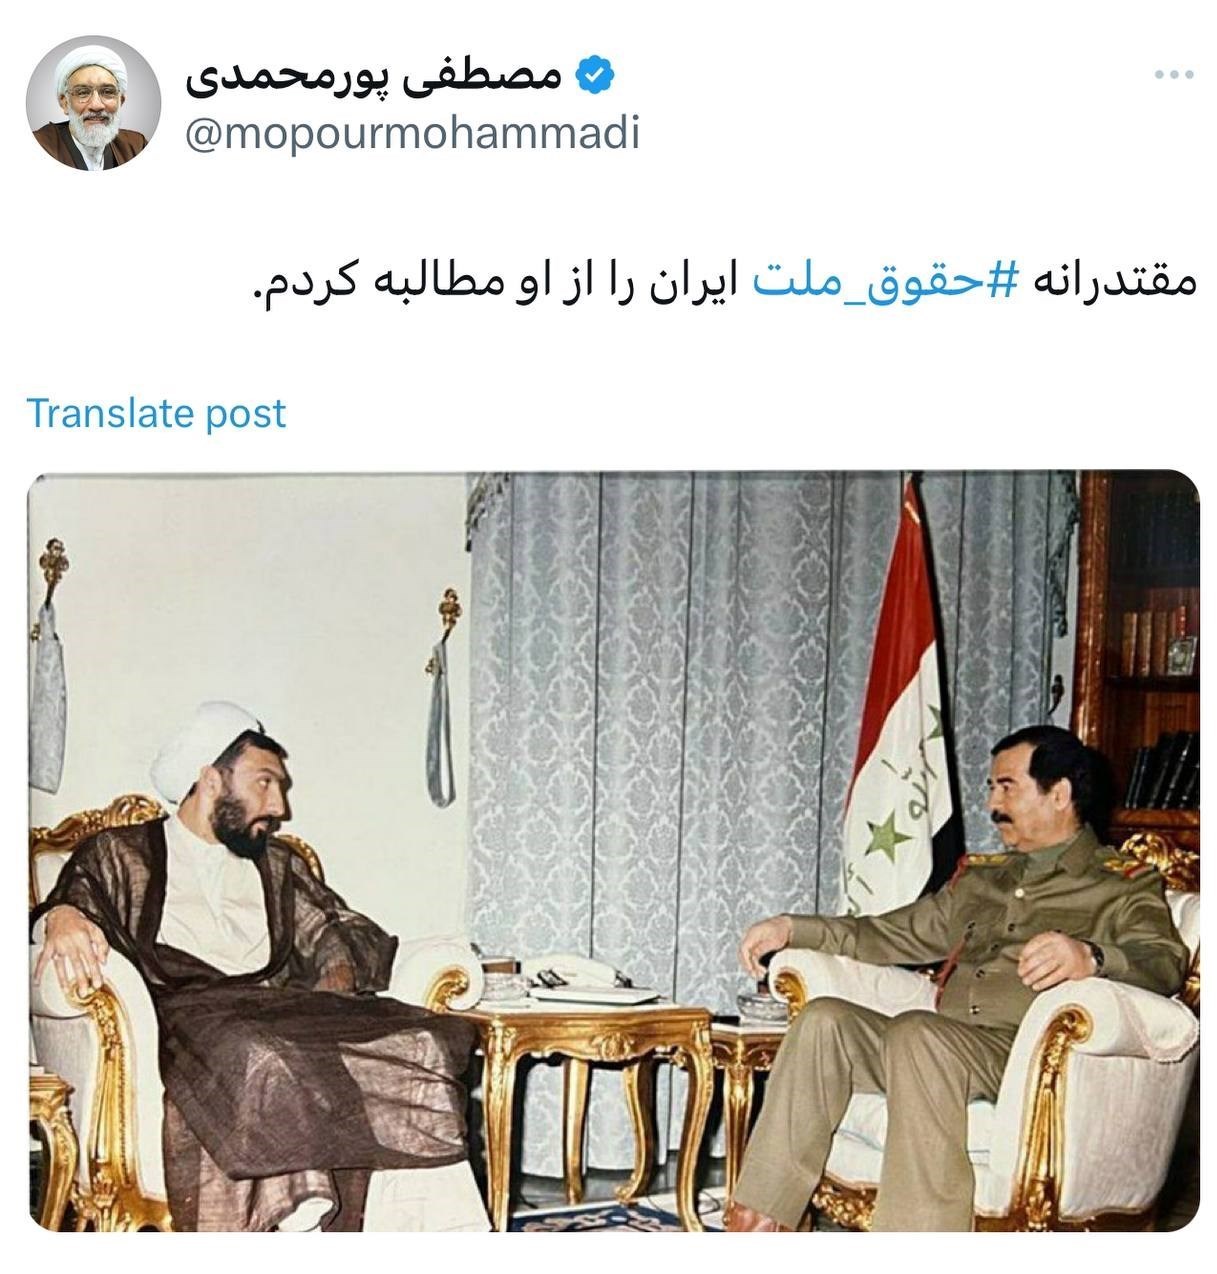 تصویری از مذاکره نامزد انتخابات و صدام حسین در عراق